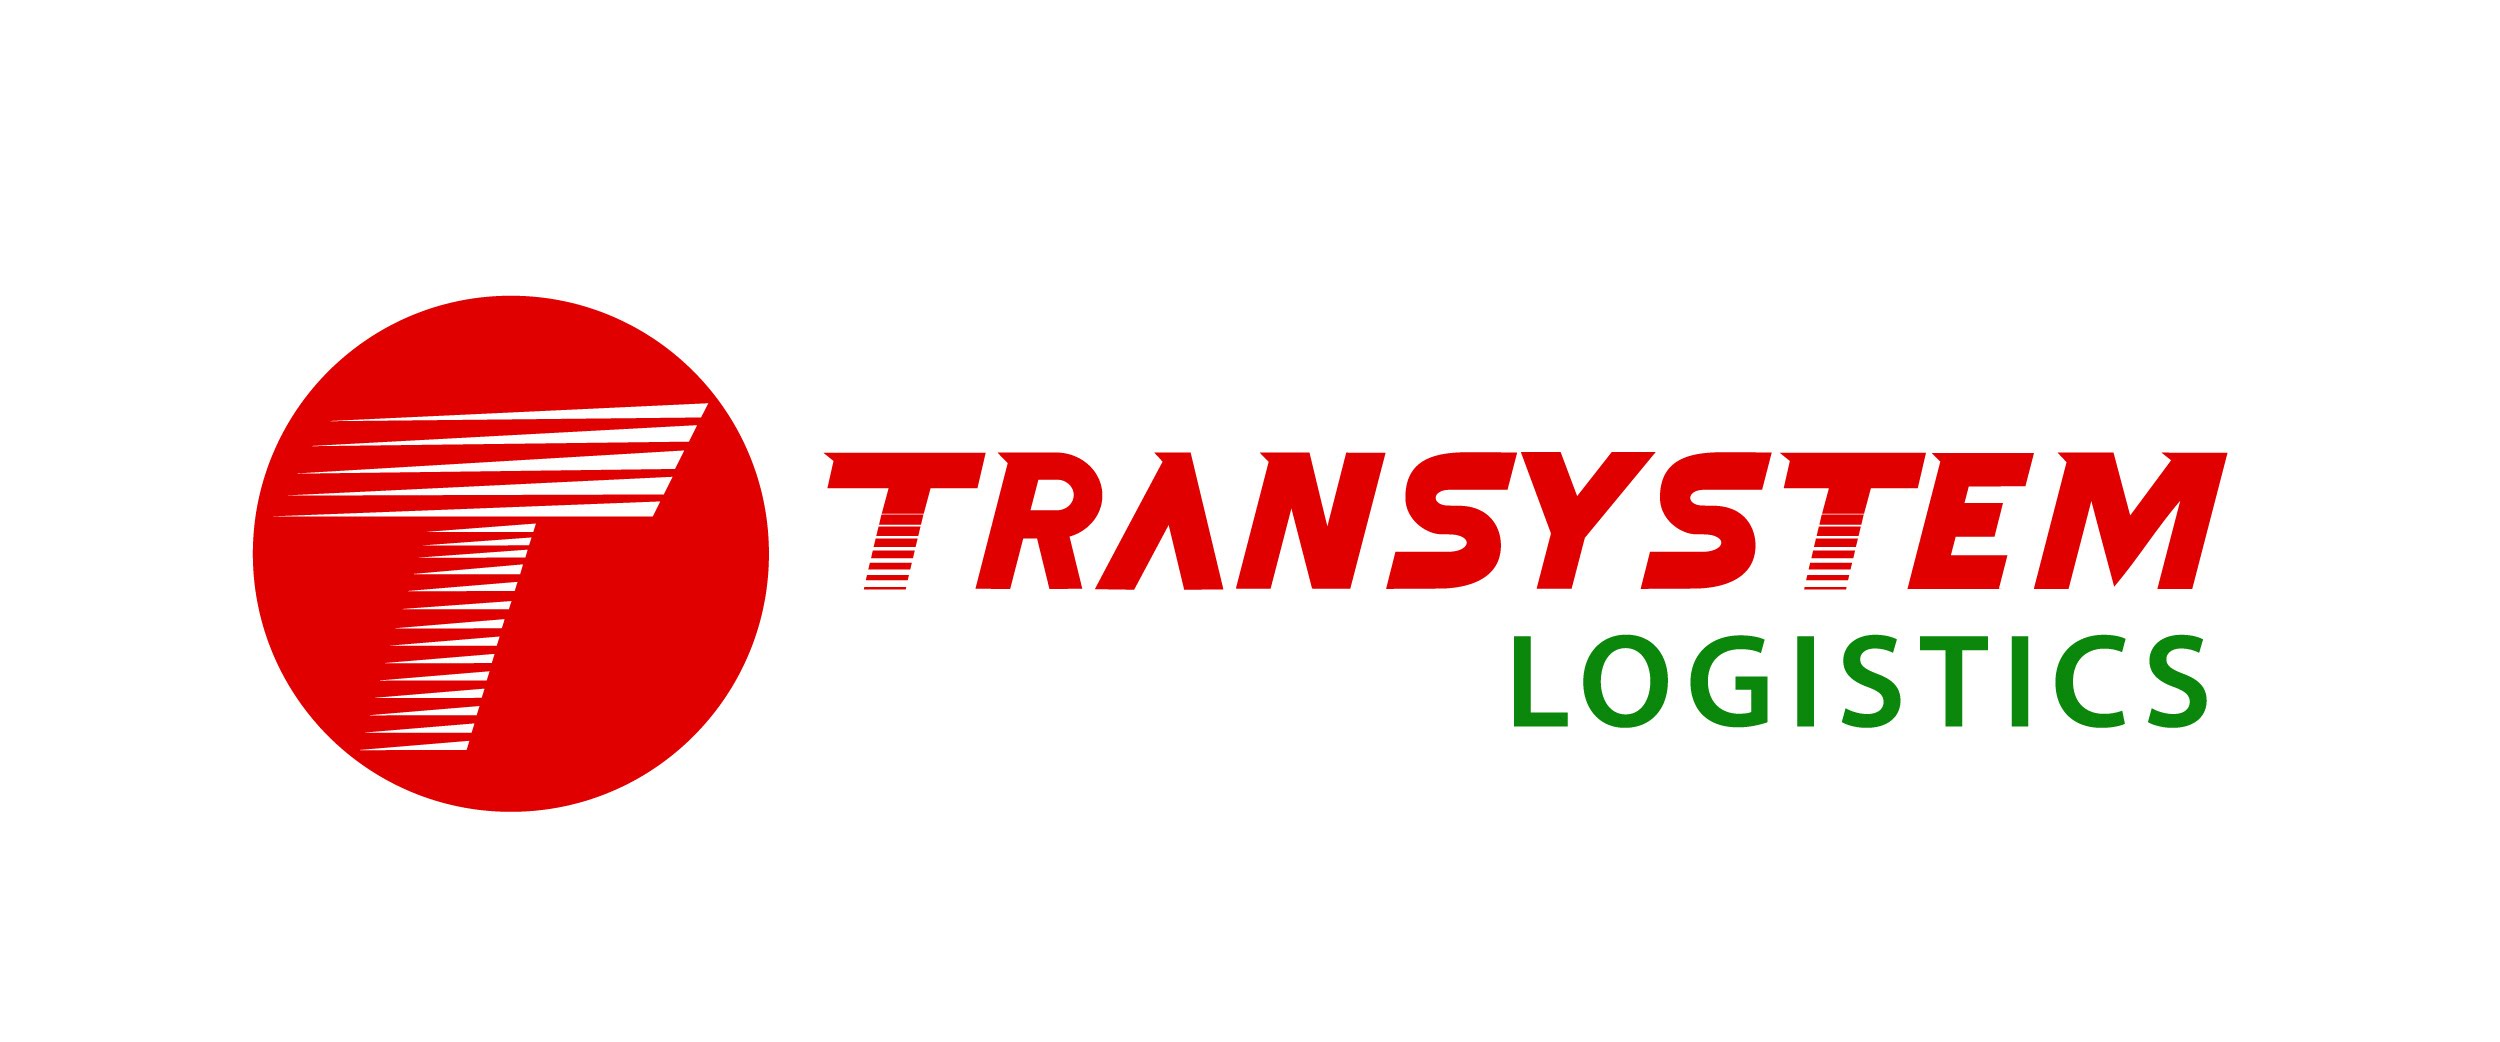 บริษัท ทรานส์ซิสเต็ม โลจิสติกส์ จำกัด logo โลโก้